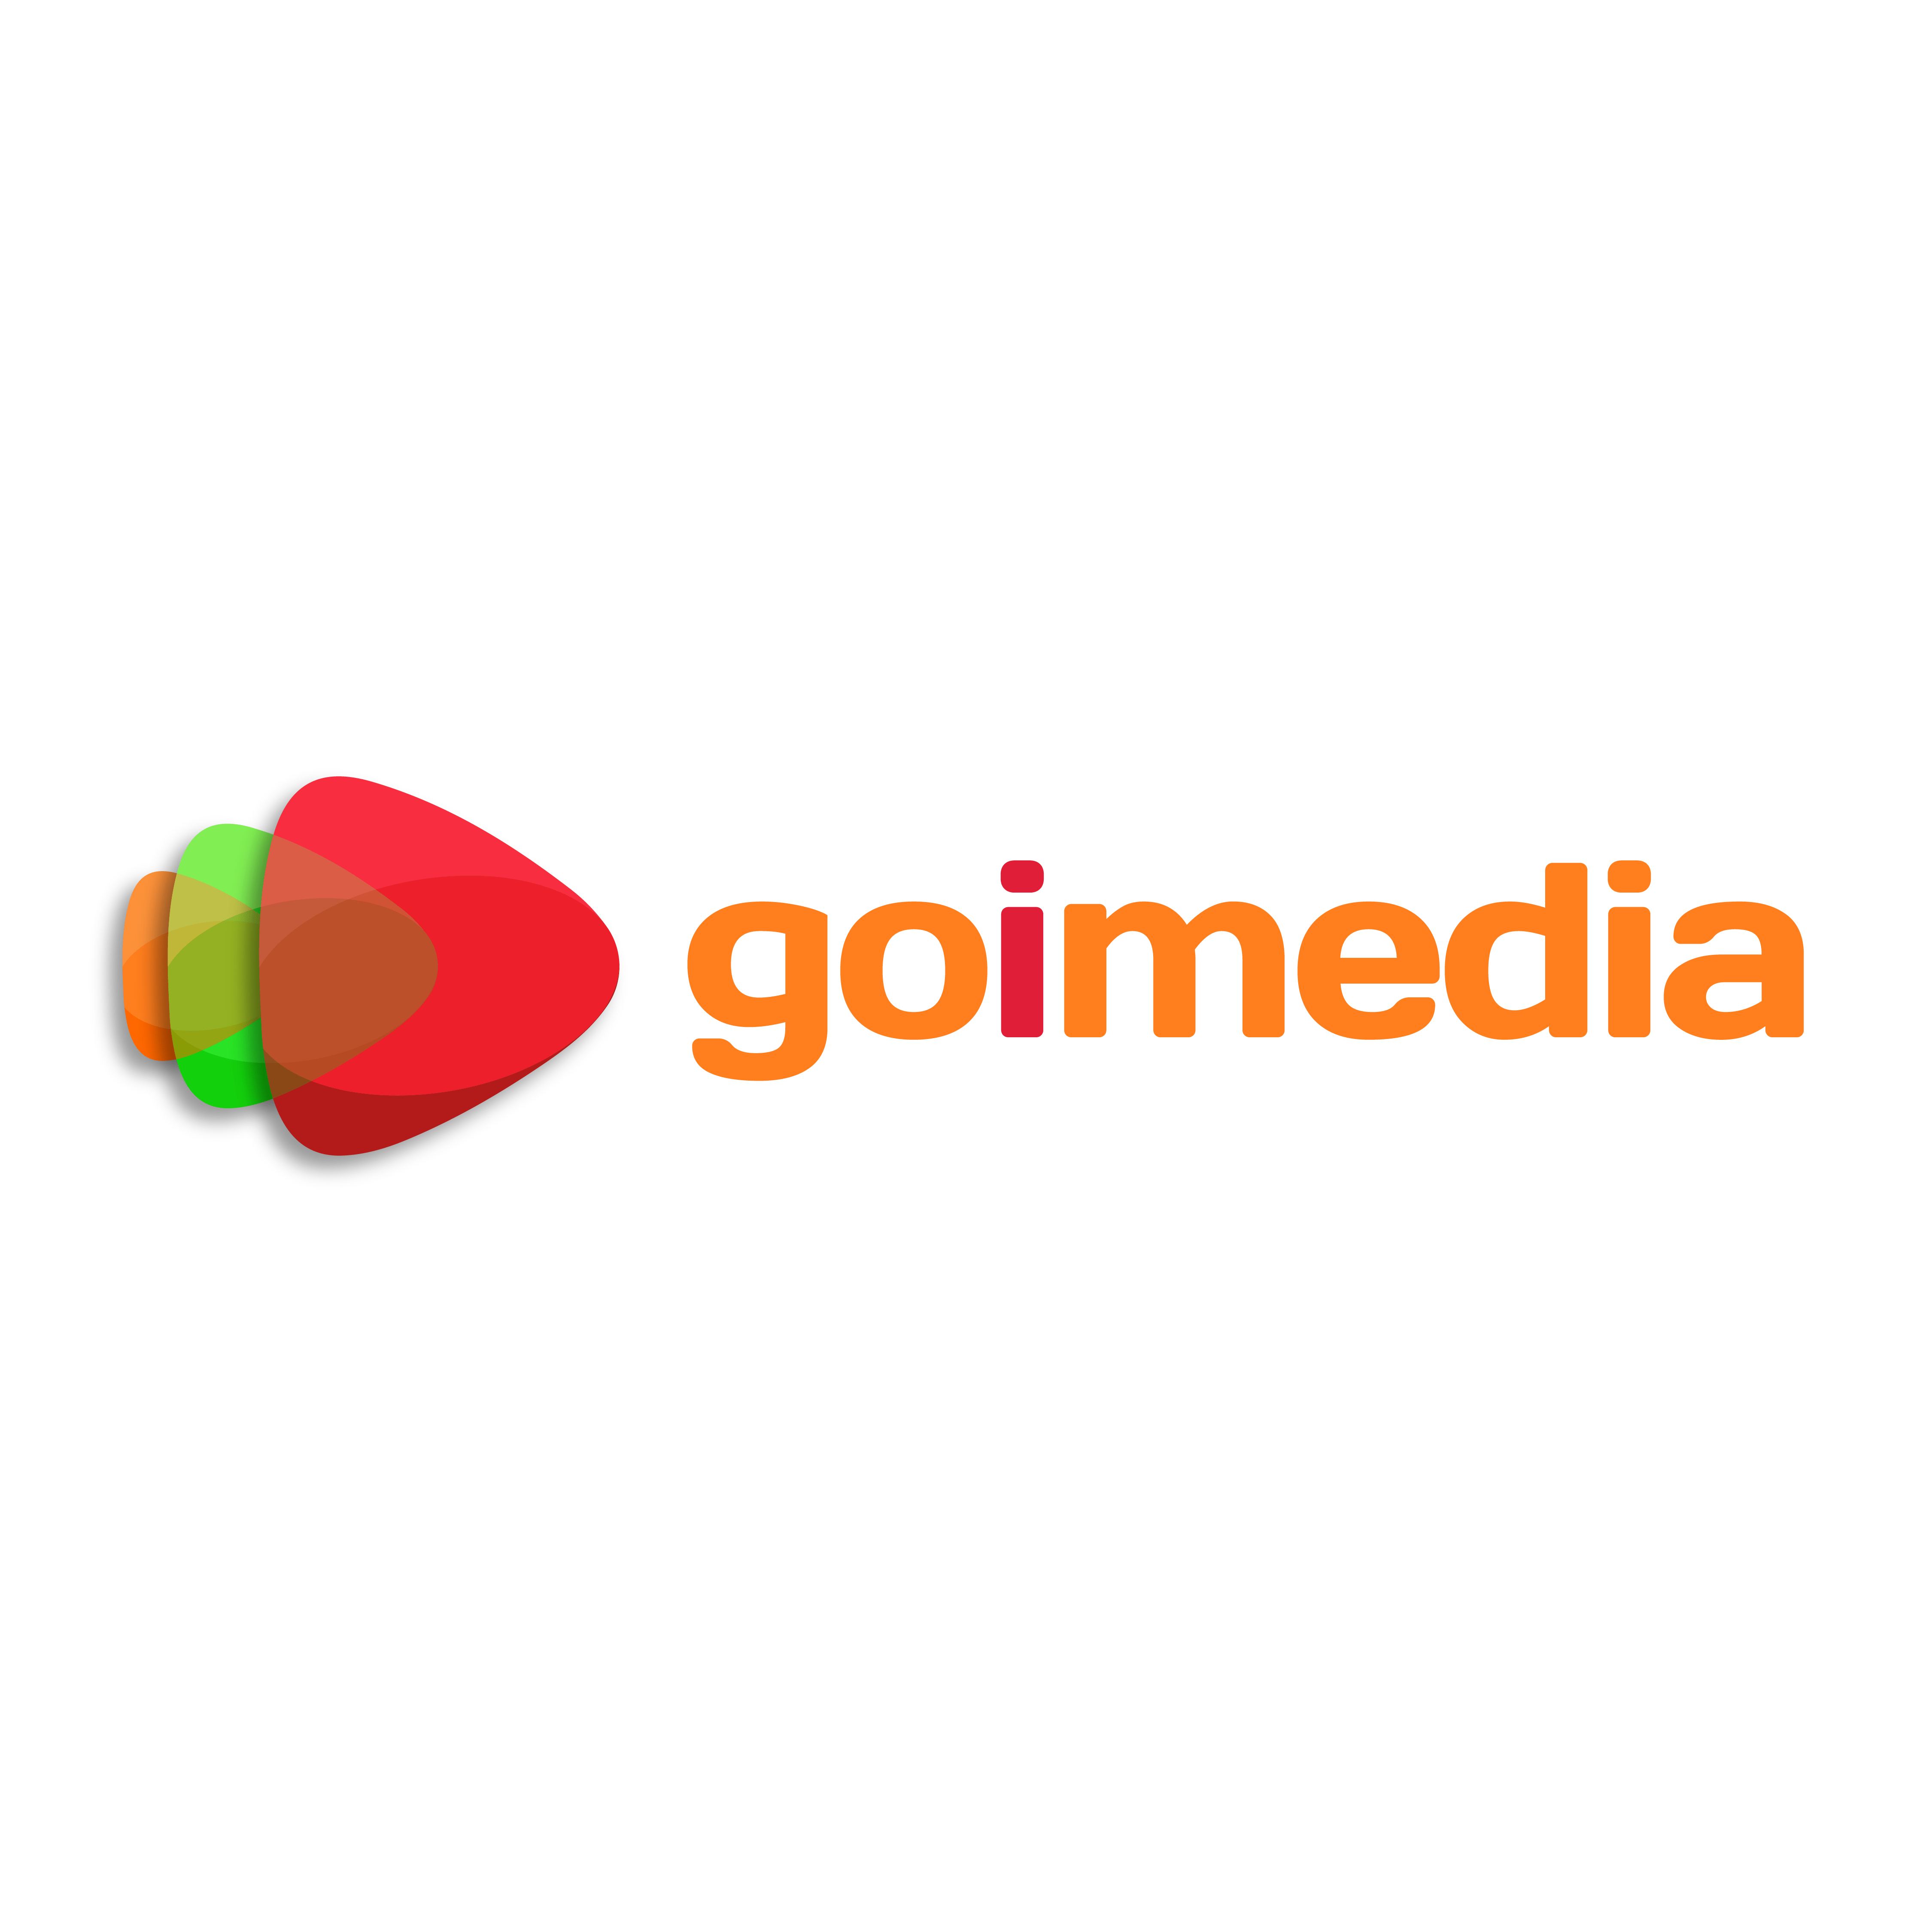 goimedia logo